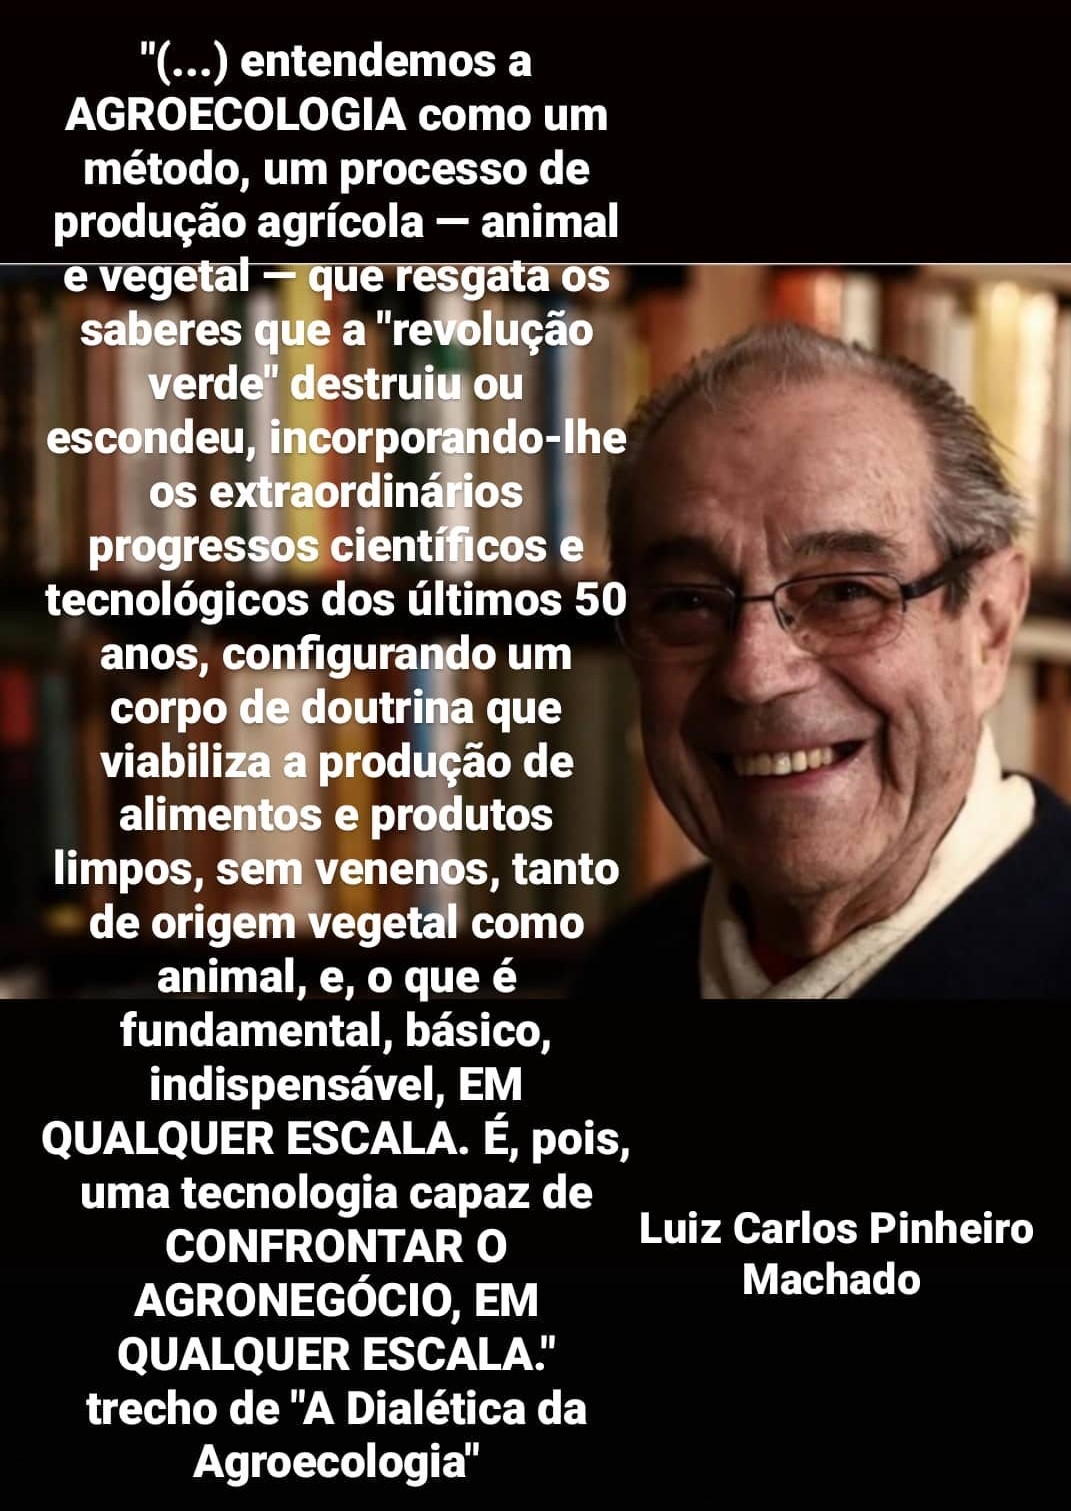 Luiz Carlos Pinheiro Machado